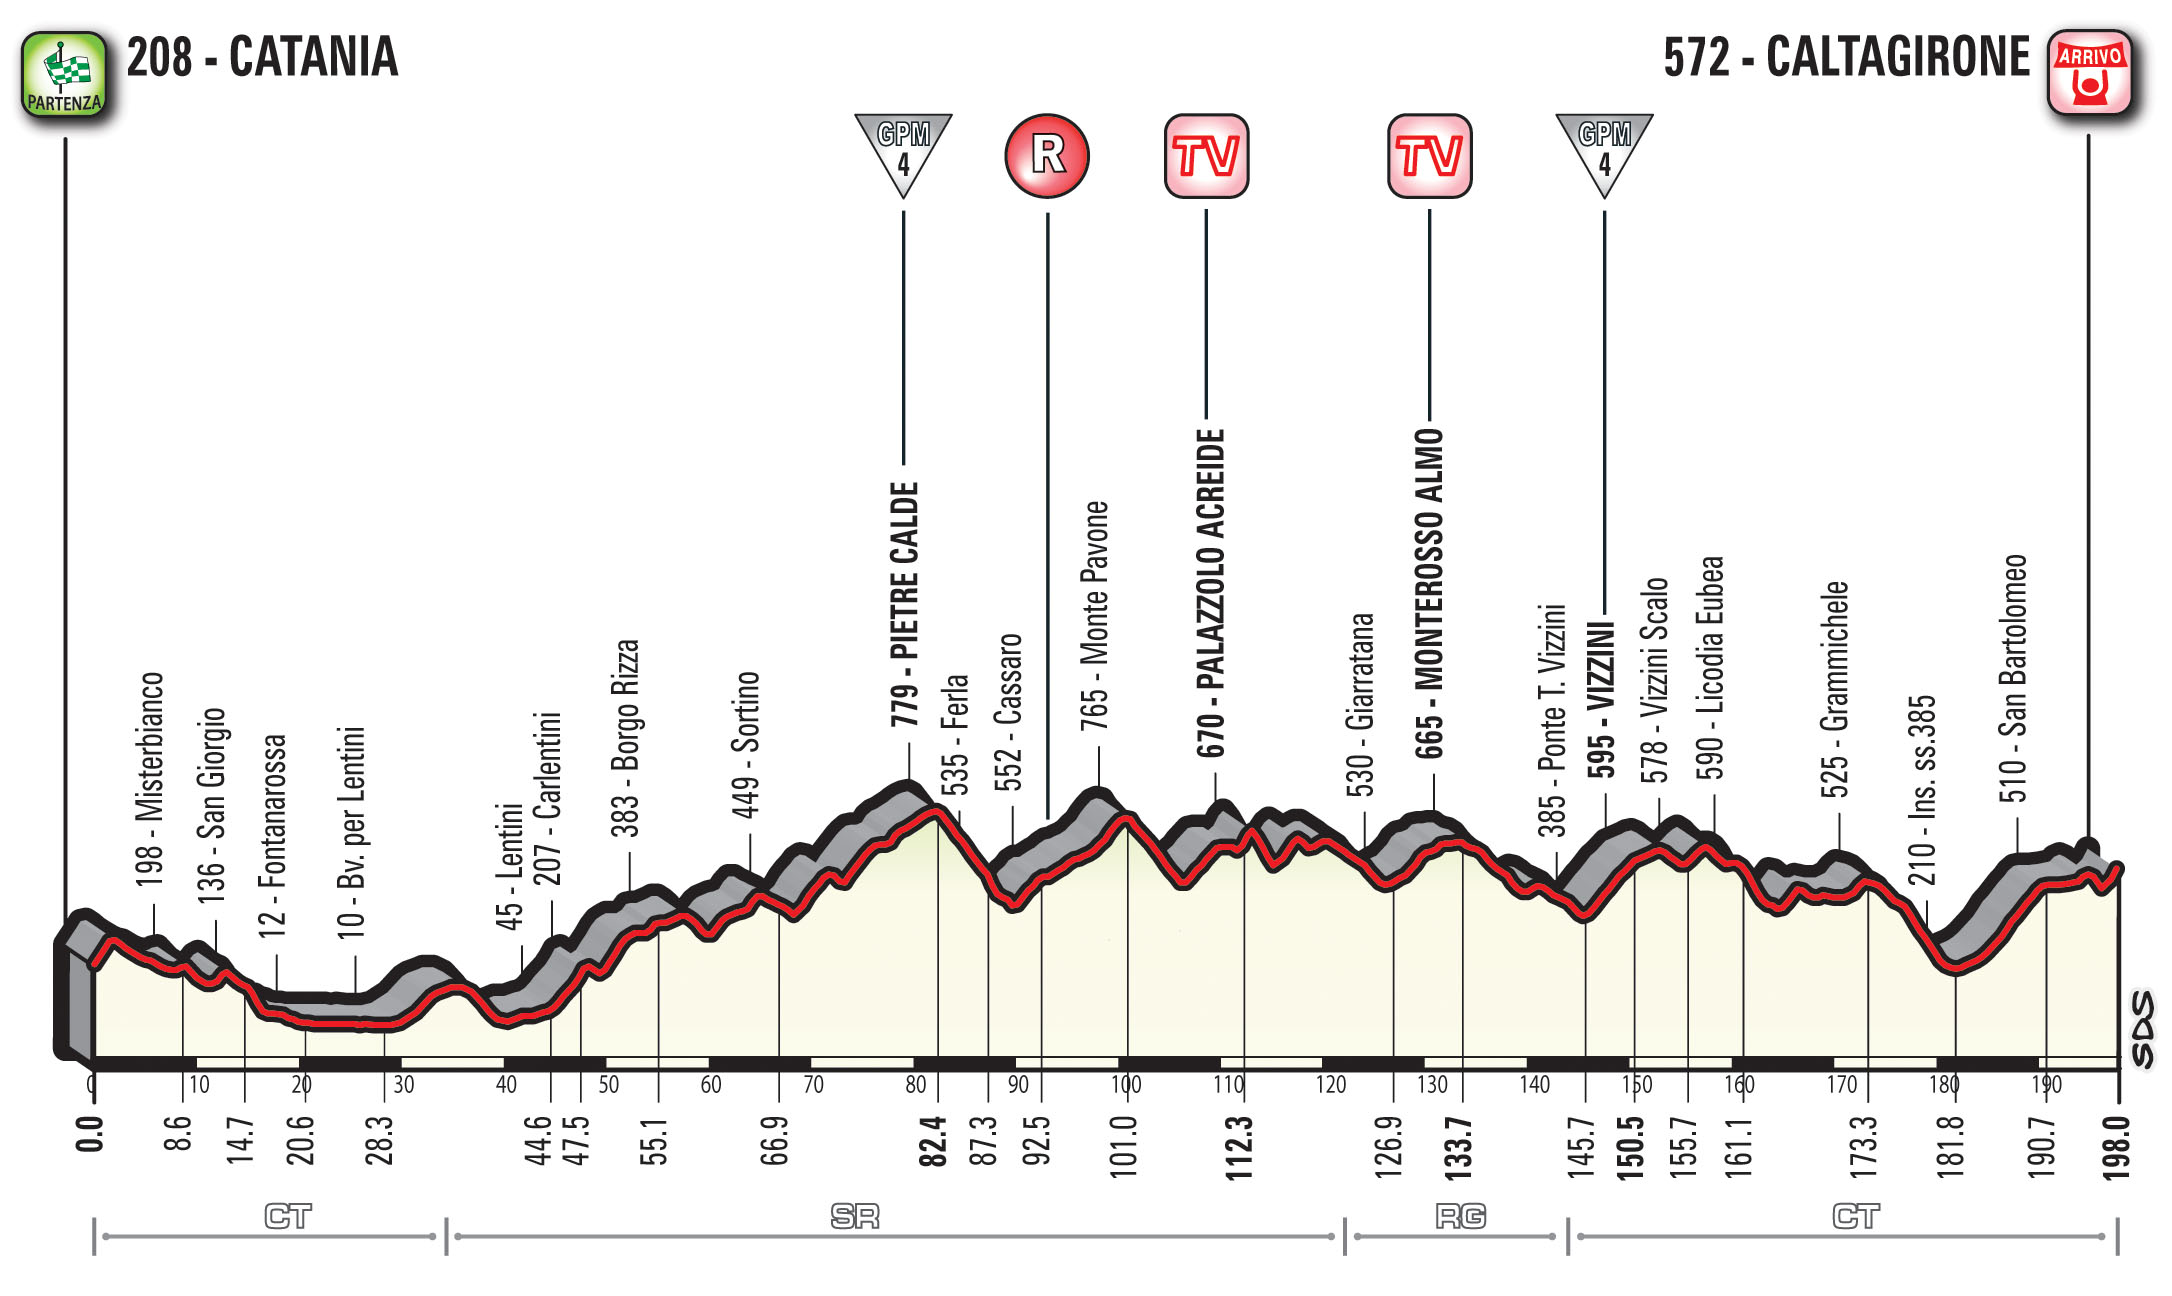 profil 4. etapu Giro d'Italia 2018